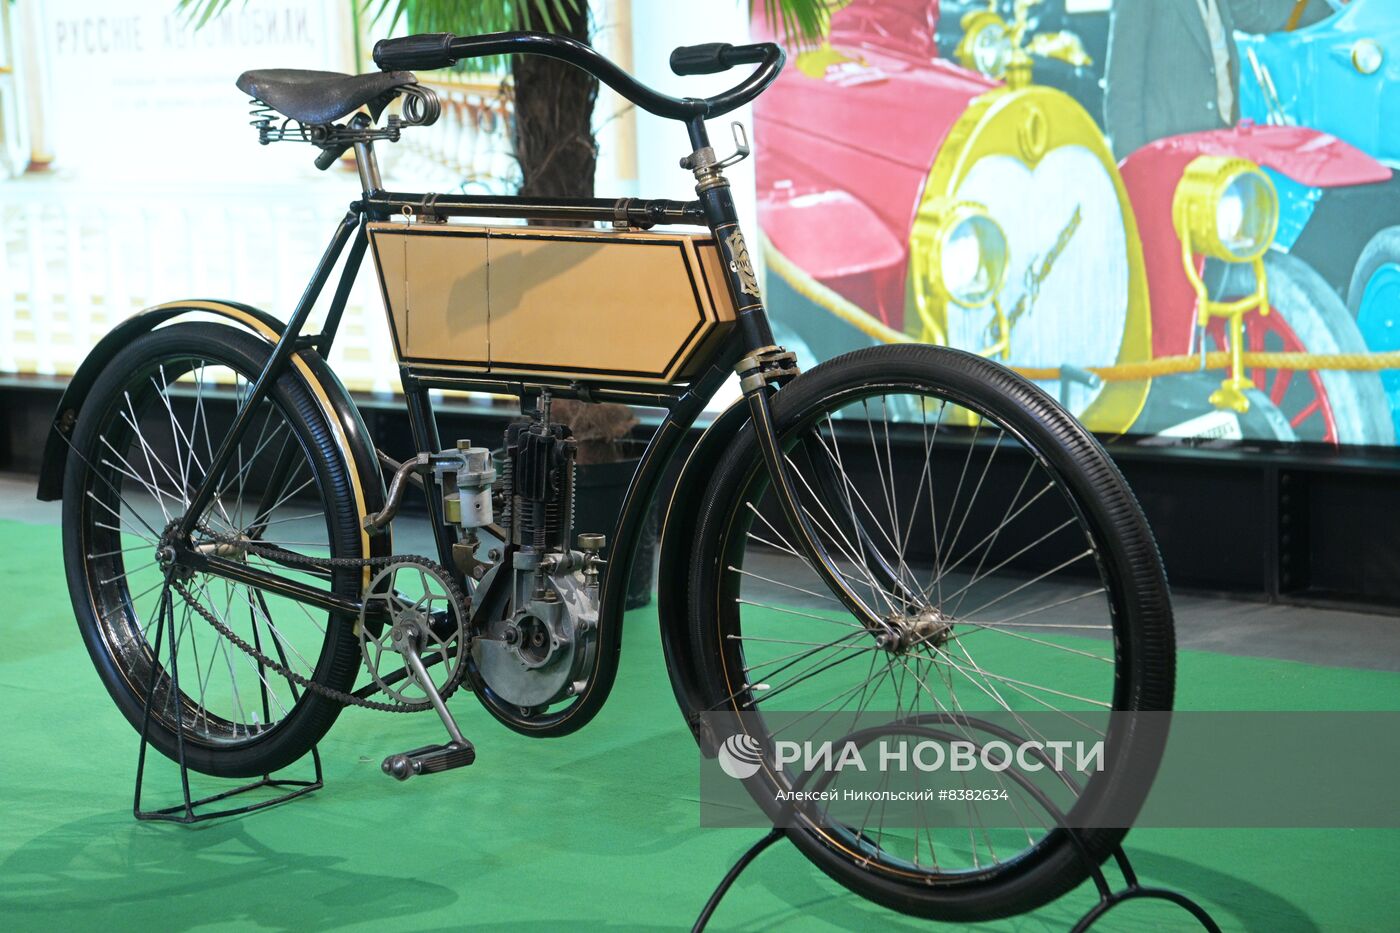 Выставка "Первые моторы России"